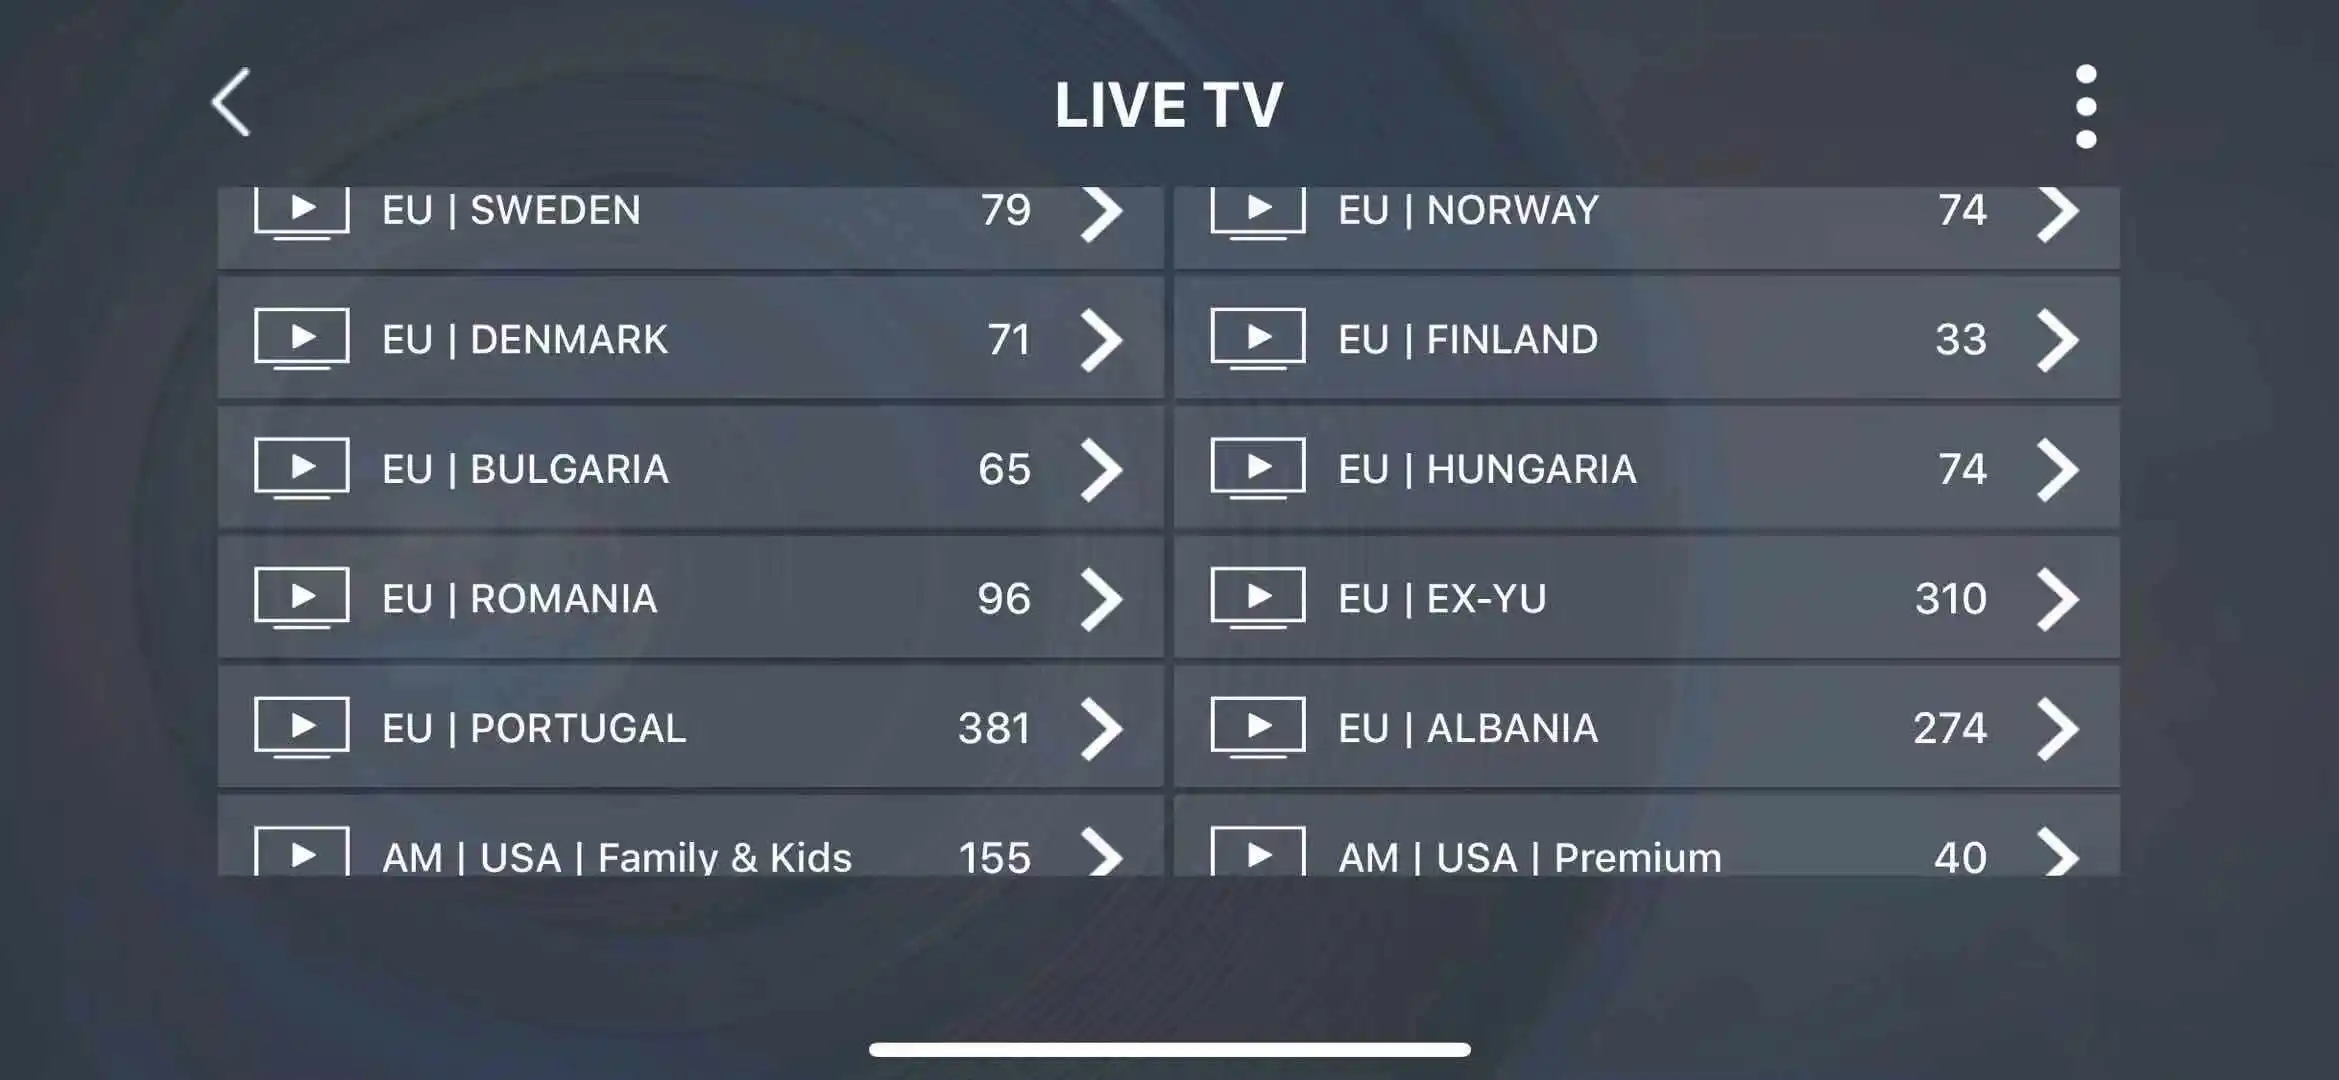 X96H Android 9,0 приставка подписка Франция Испания Германия Европа 7300+ Live 8300+ VOD есть каналы для взрослых smart tv box